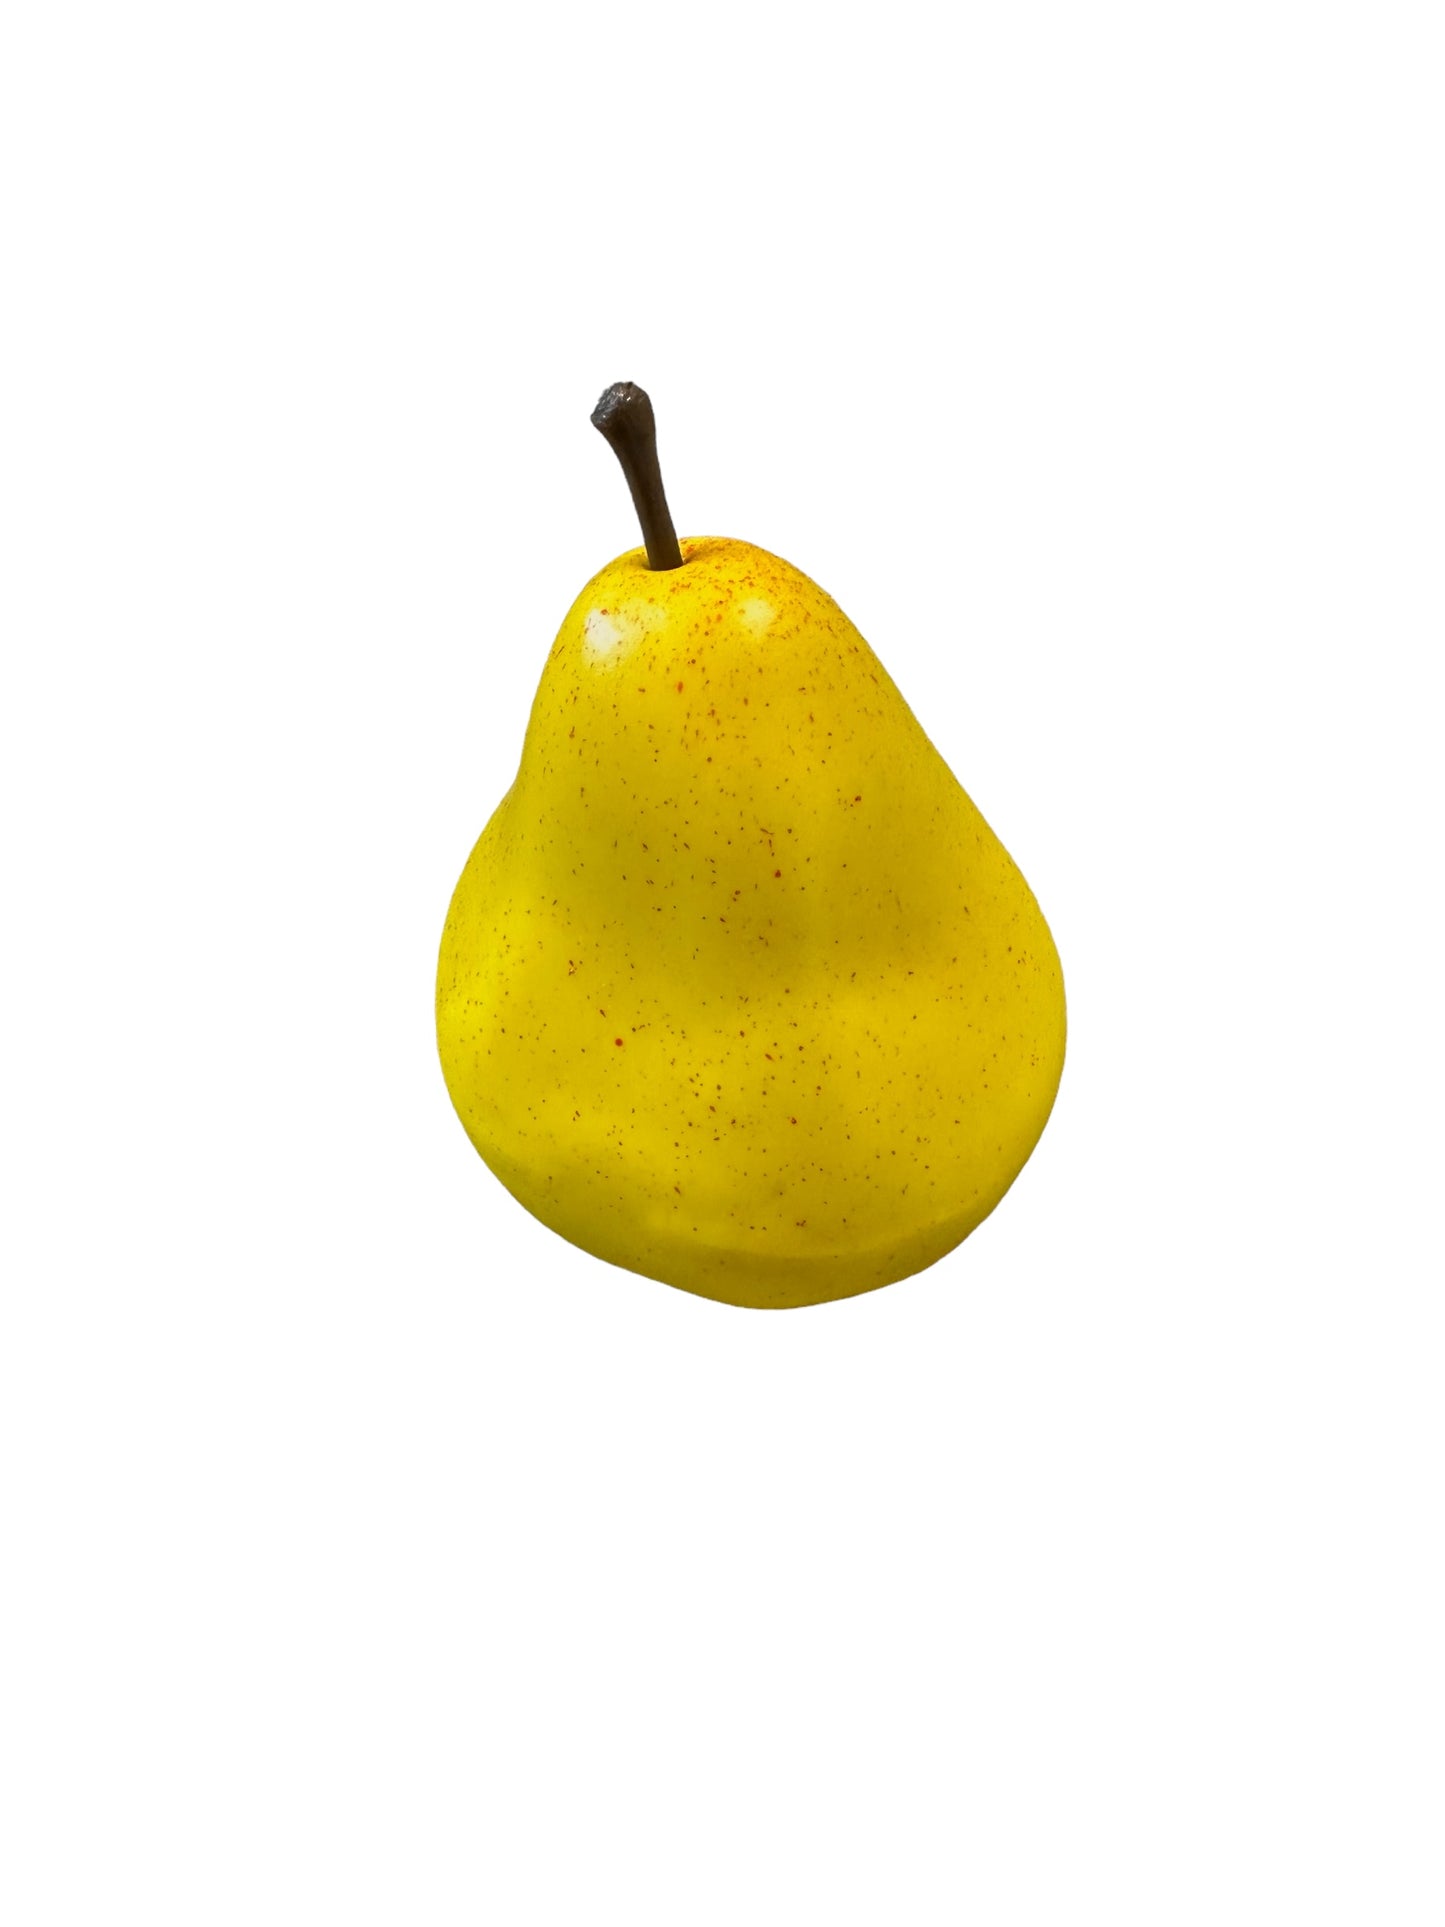 CMC206 Pear